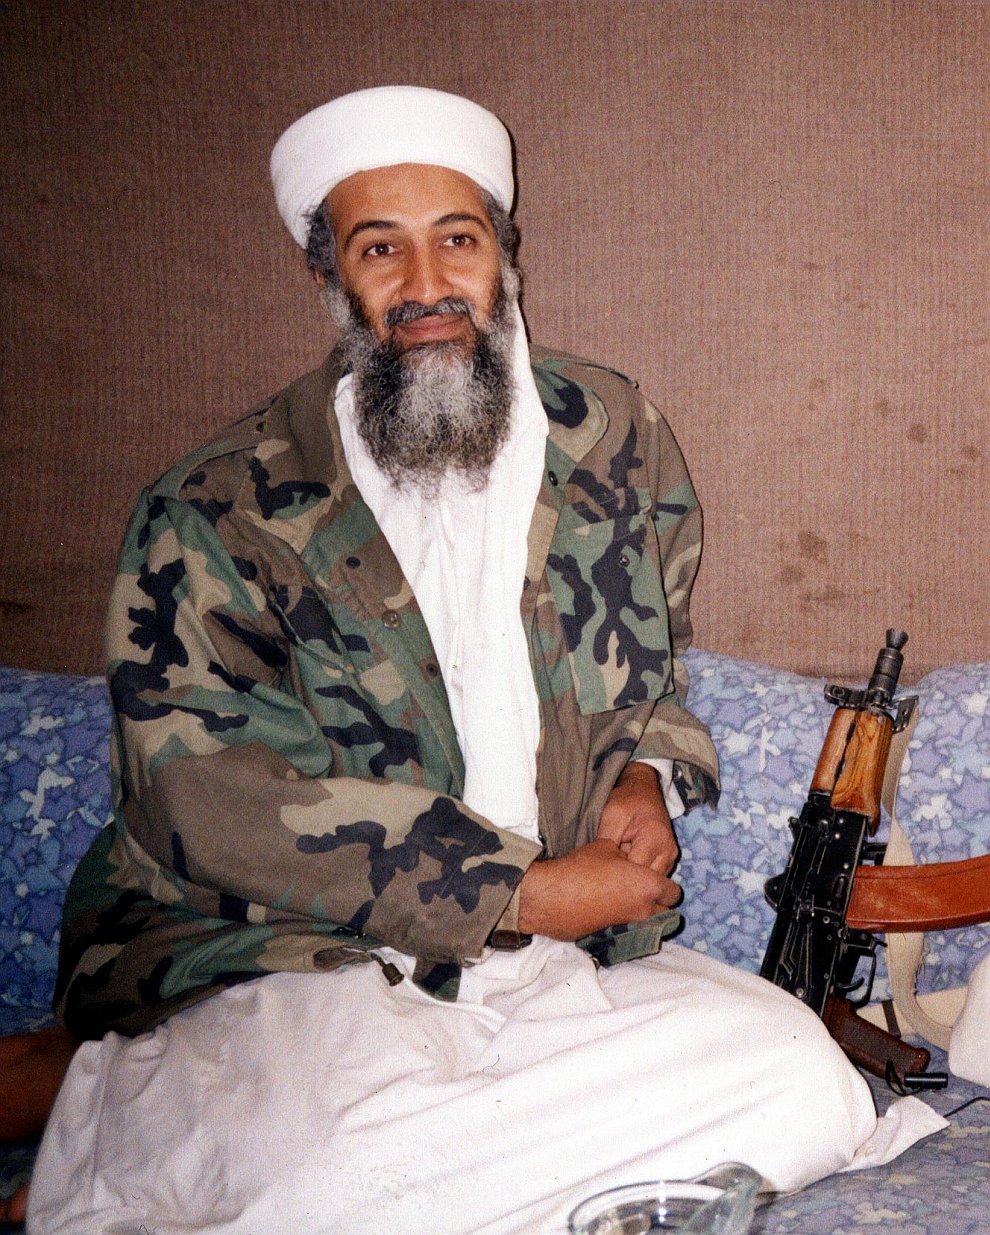 Усама бен Ладен ликвидирован: реакция в мире